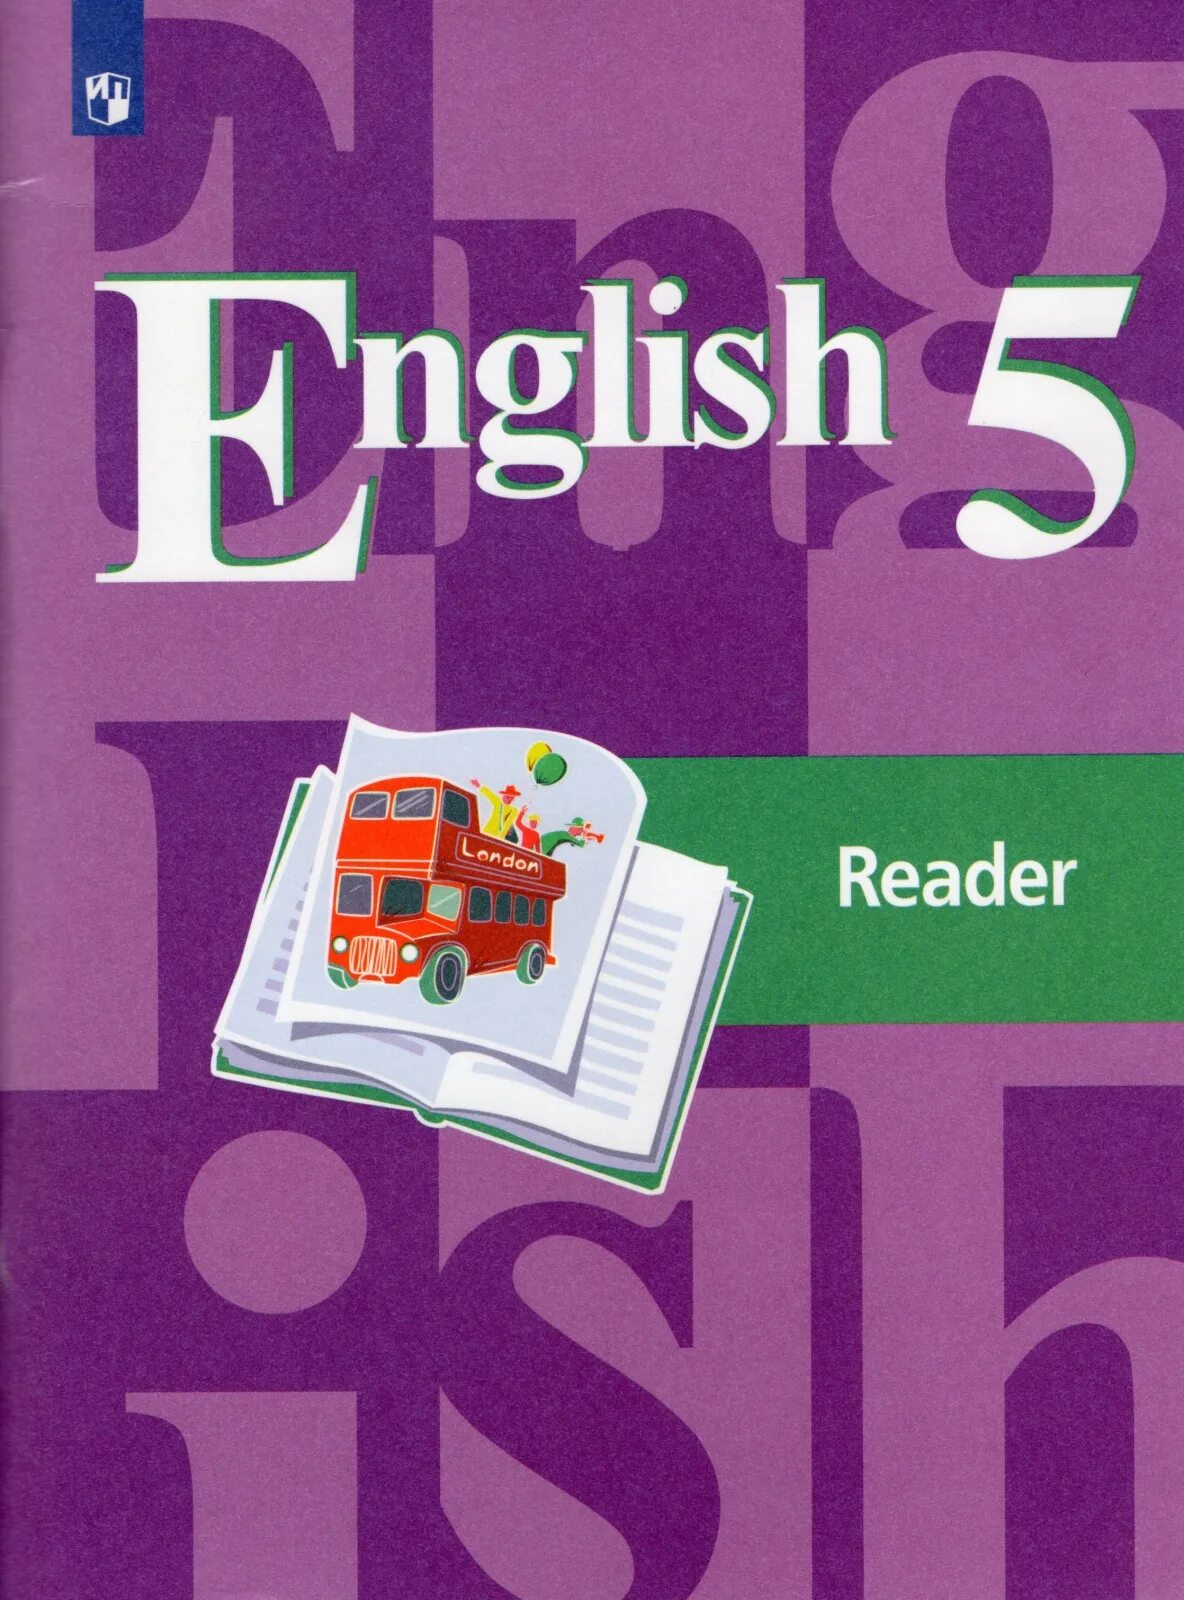 English 5 Reader кузовлев лапа. УМК кузовлев для 5 класса английский. Кузовлев англ. Язык 5 чтение книга. Книга для чтения английский язык 5 класс. Английский язык 5 класс короче